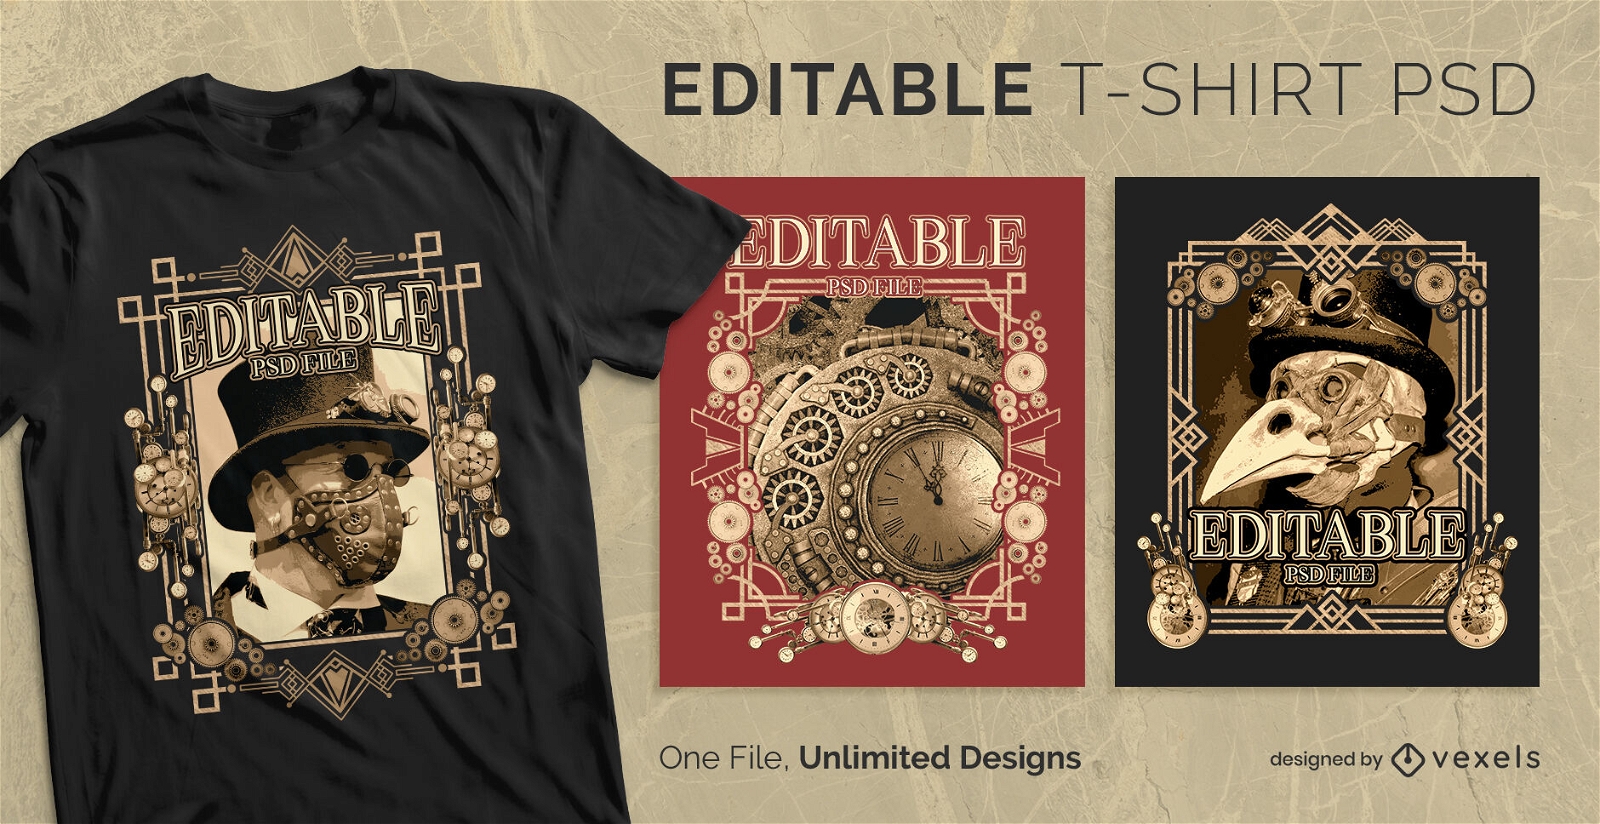 Steampunk gestaltet skalierbares T-Shirt-Design